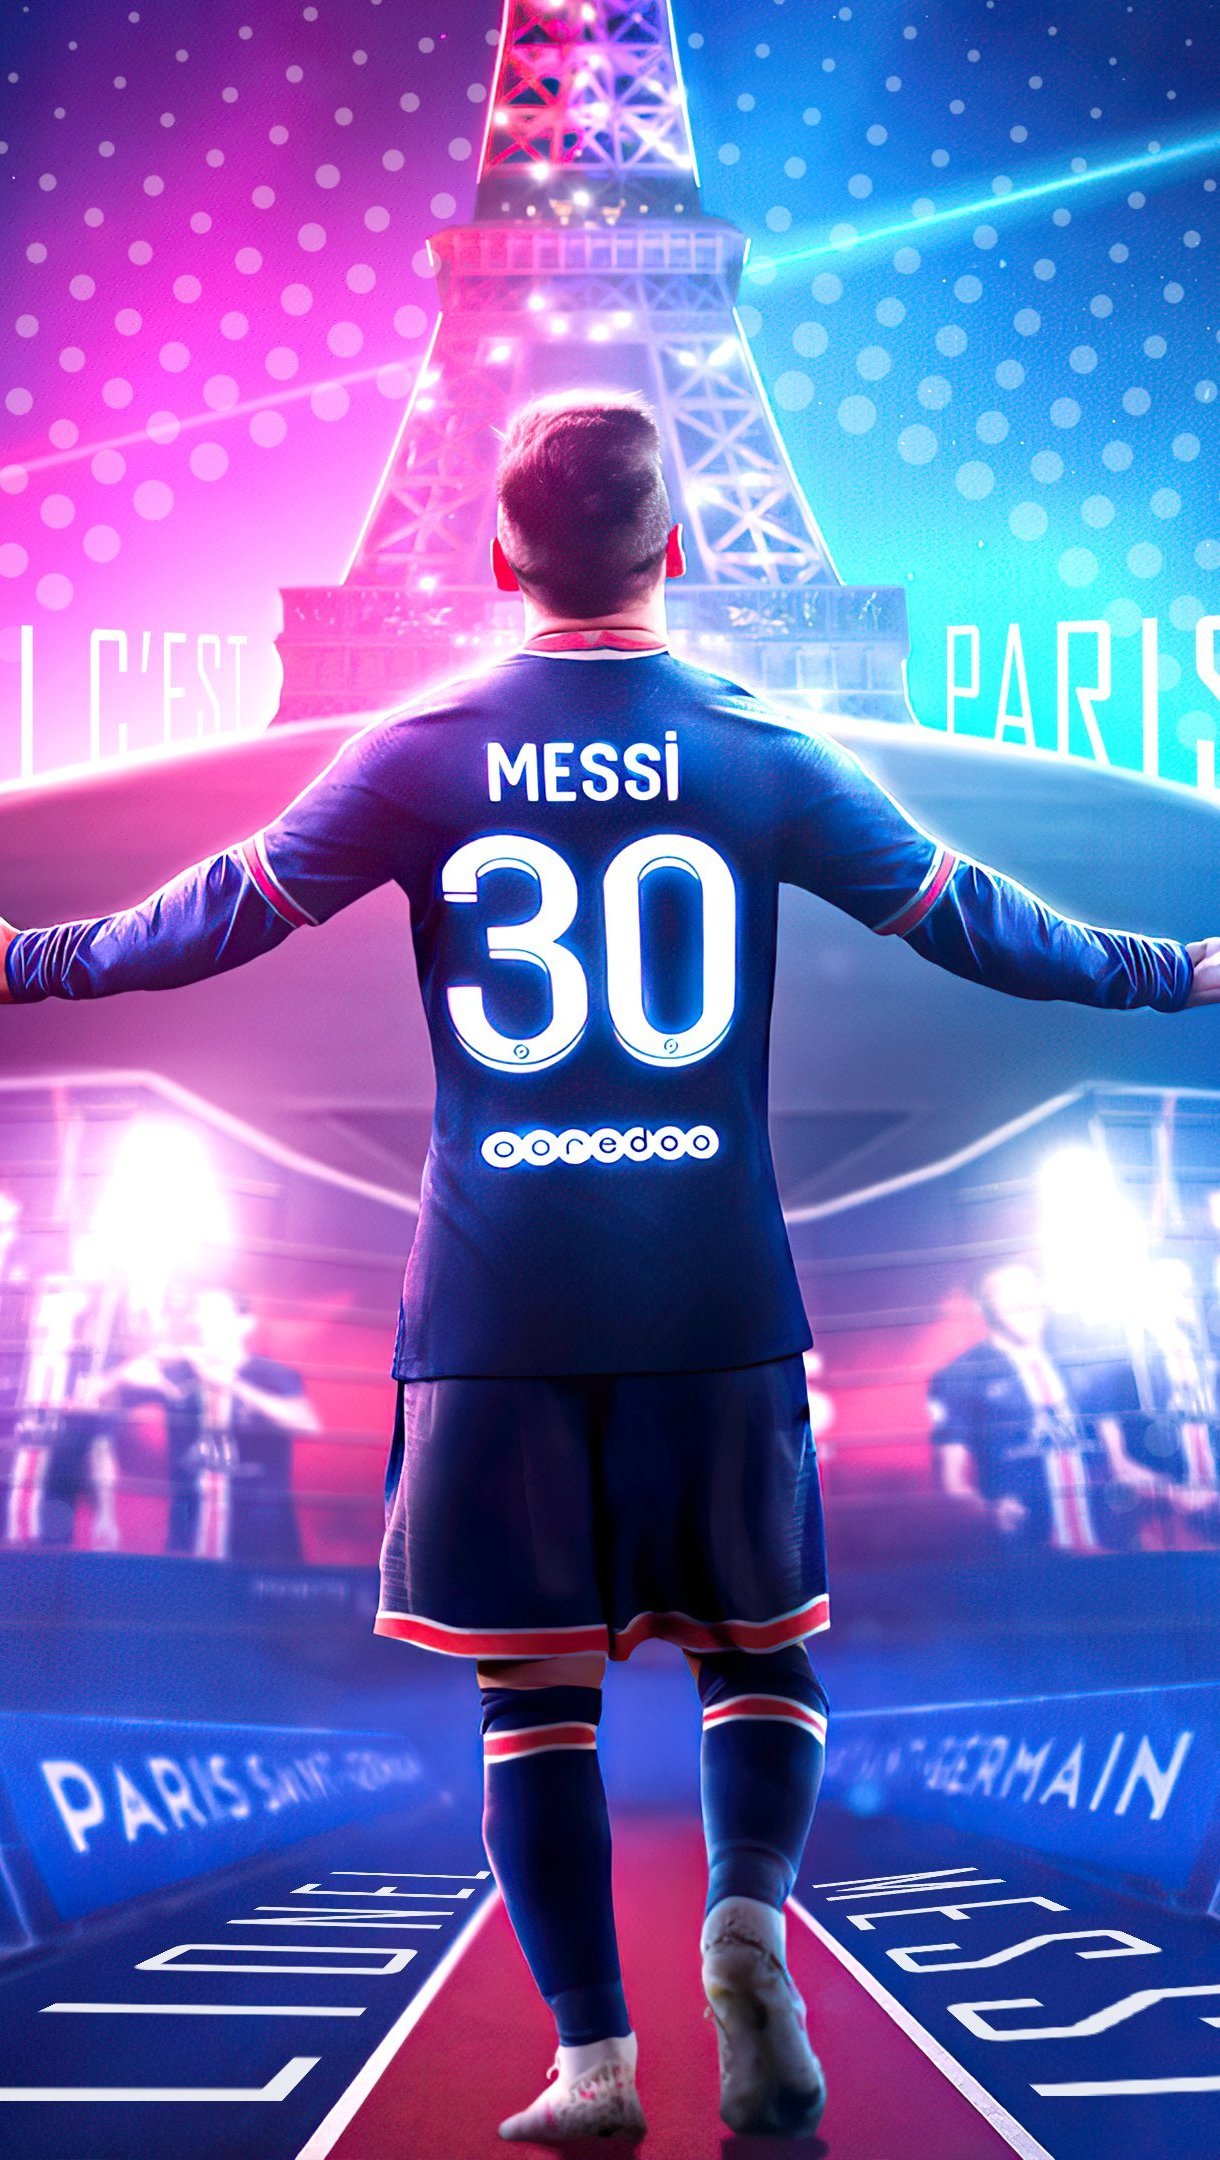 Messi và PSG được nhiều fan bóng đá mong đợi sẽ tạo nên những pha bóng kỹ thuật đẹp mắt trên sân cỏ. Hãy biến điện thoại của bạn thành sân vận động và chiêm ngưỡng vẻ đẹp của siêu sao này trong màu áo Paris Saint-Germain với hình nền Messi PSG Wallpaper.